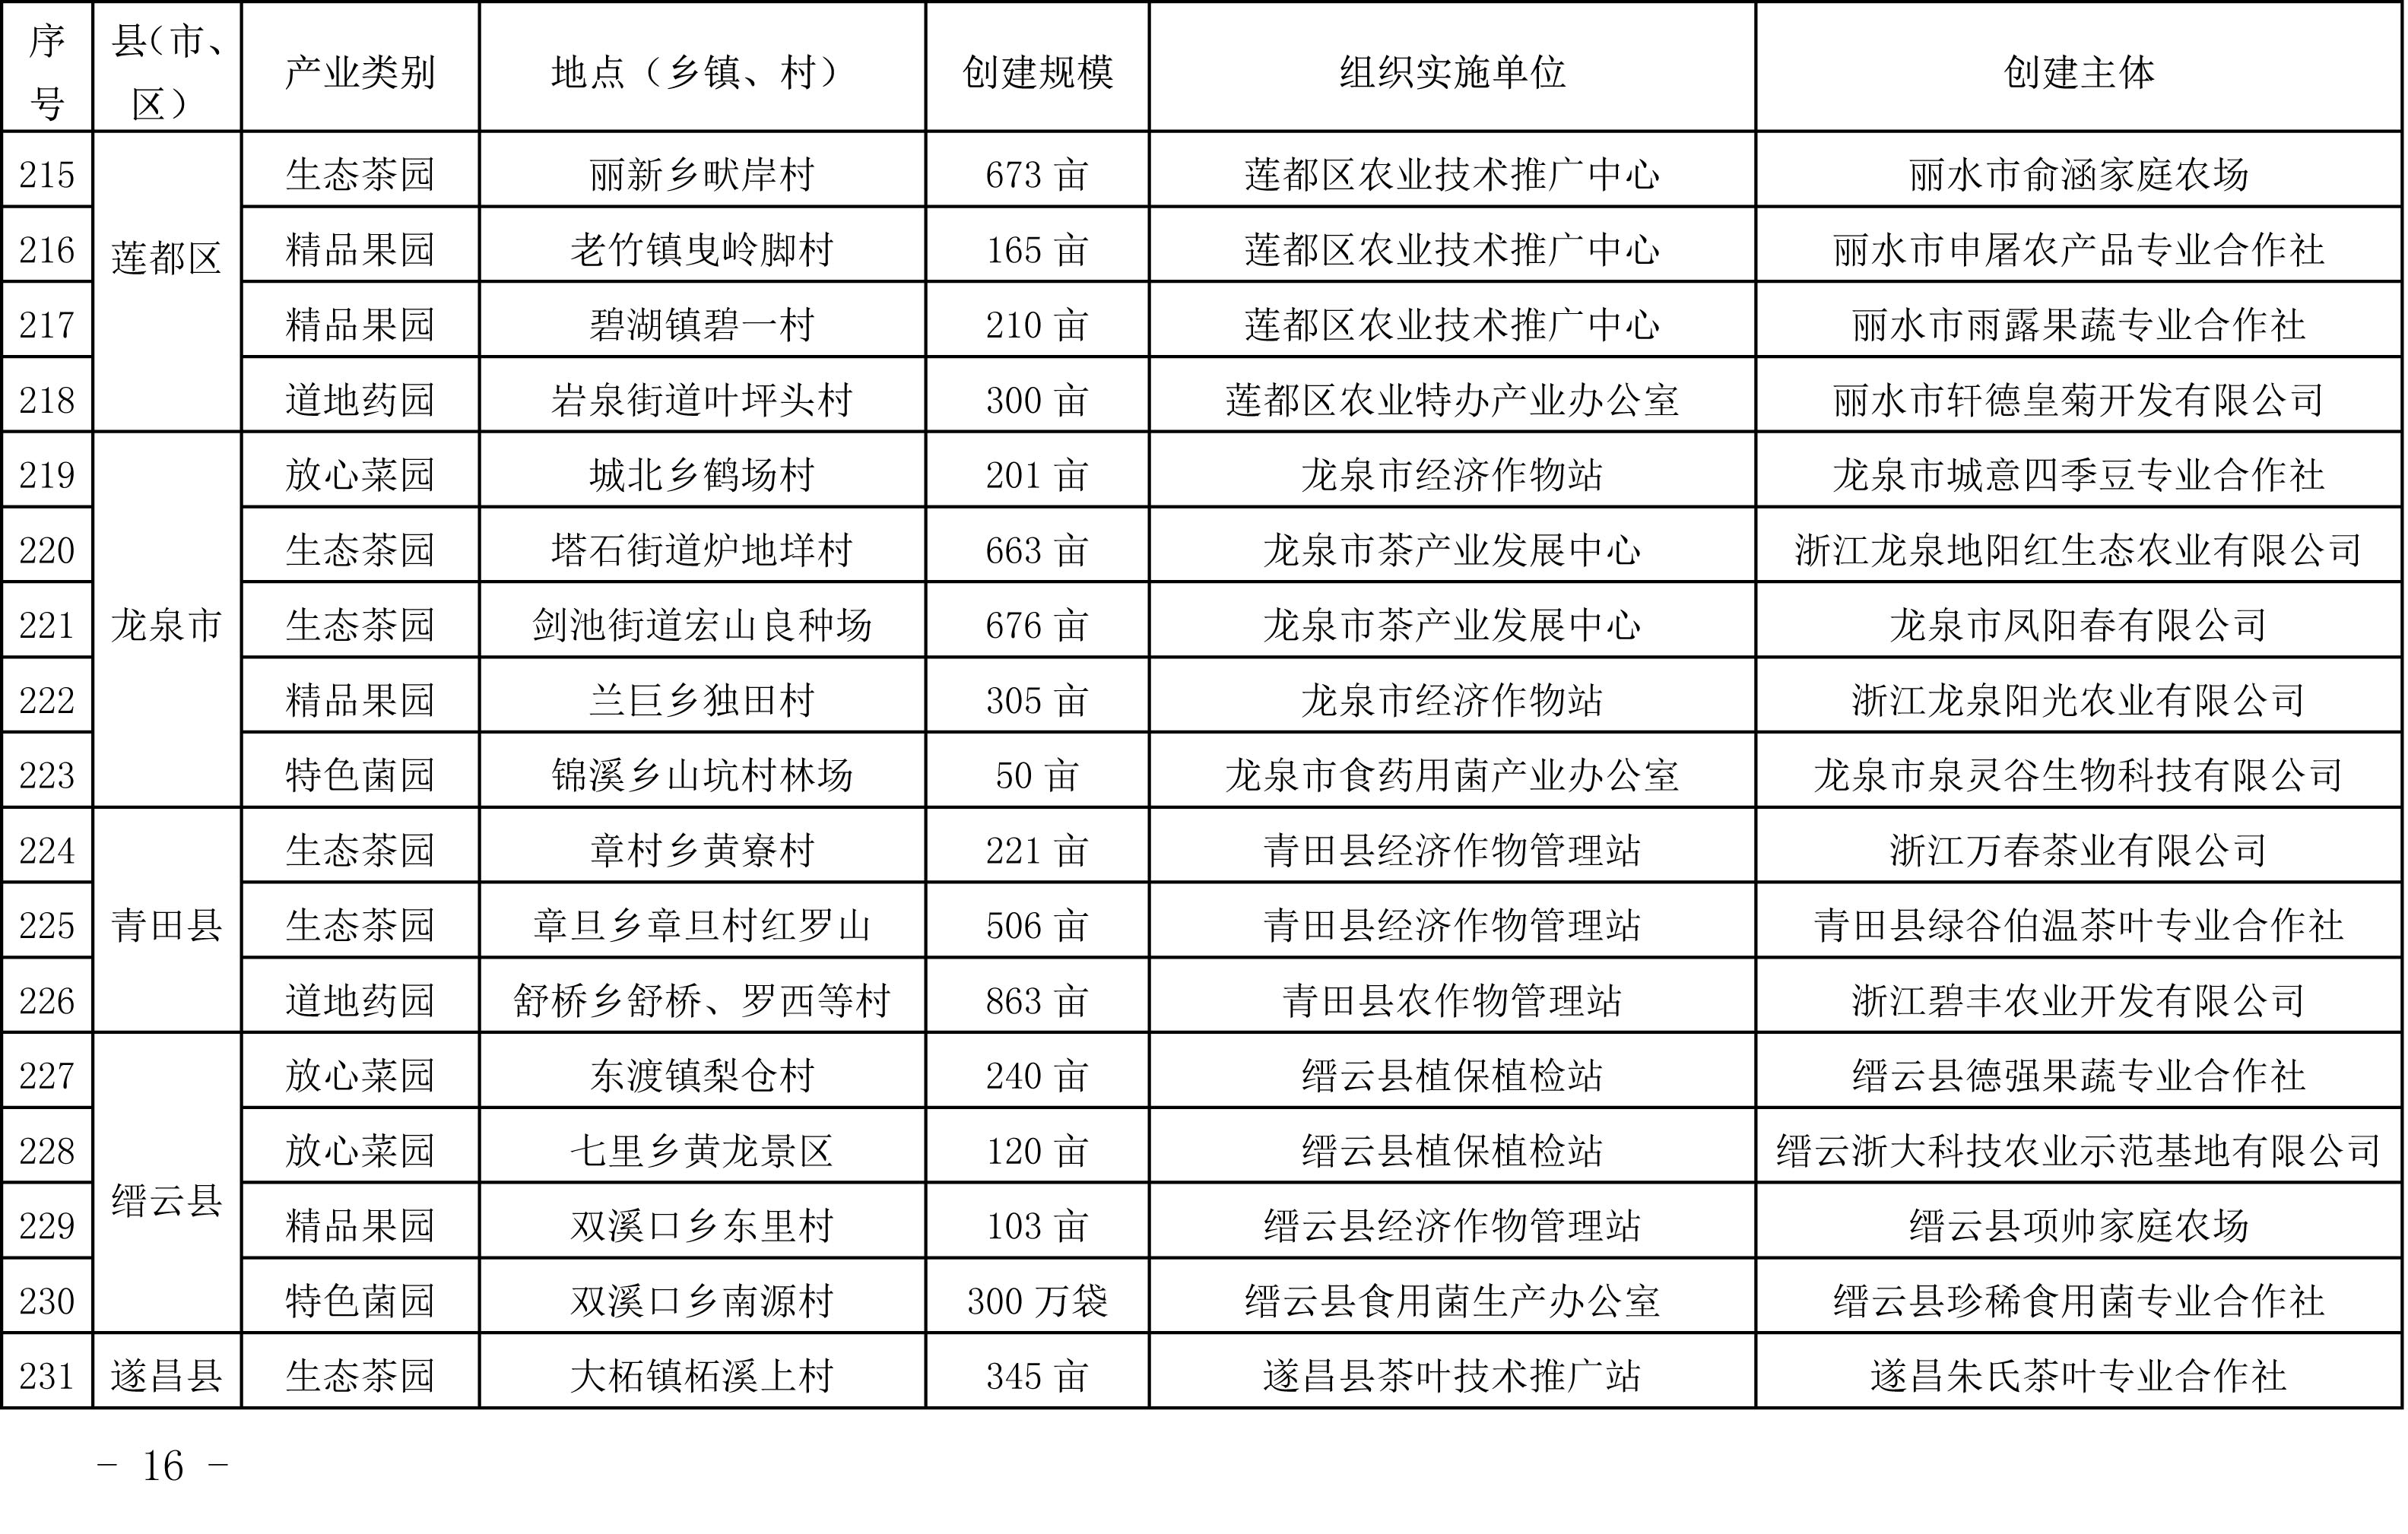 浙江省农业农村厅关于公布2019年度种植业“五园”创建省级示范基地名单的通知(图15)